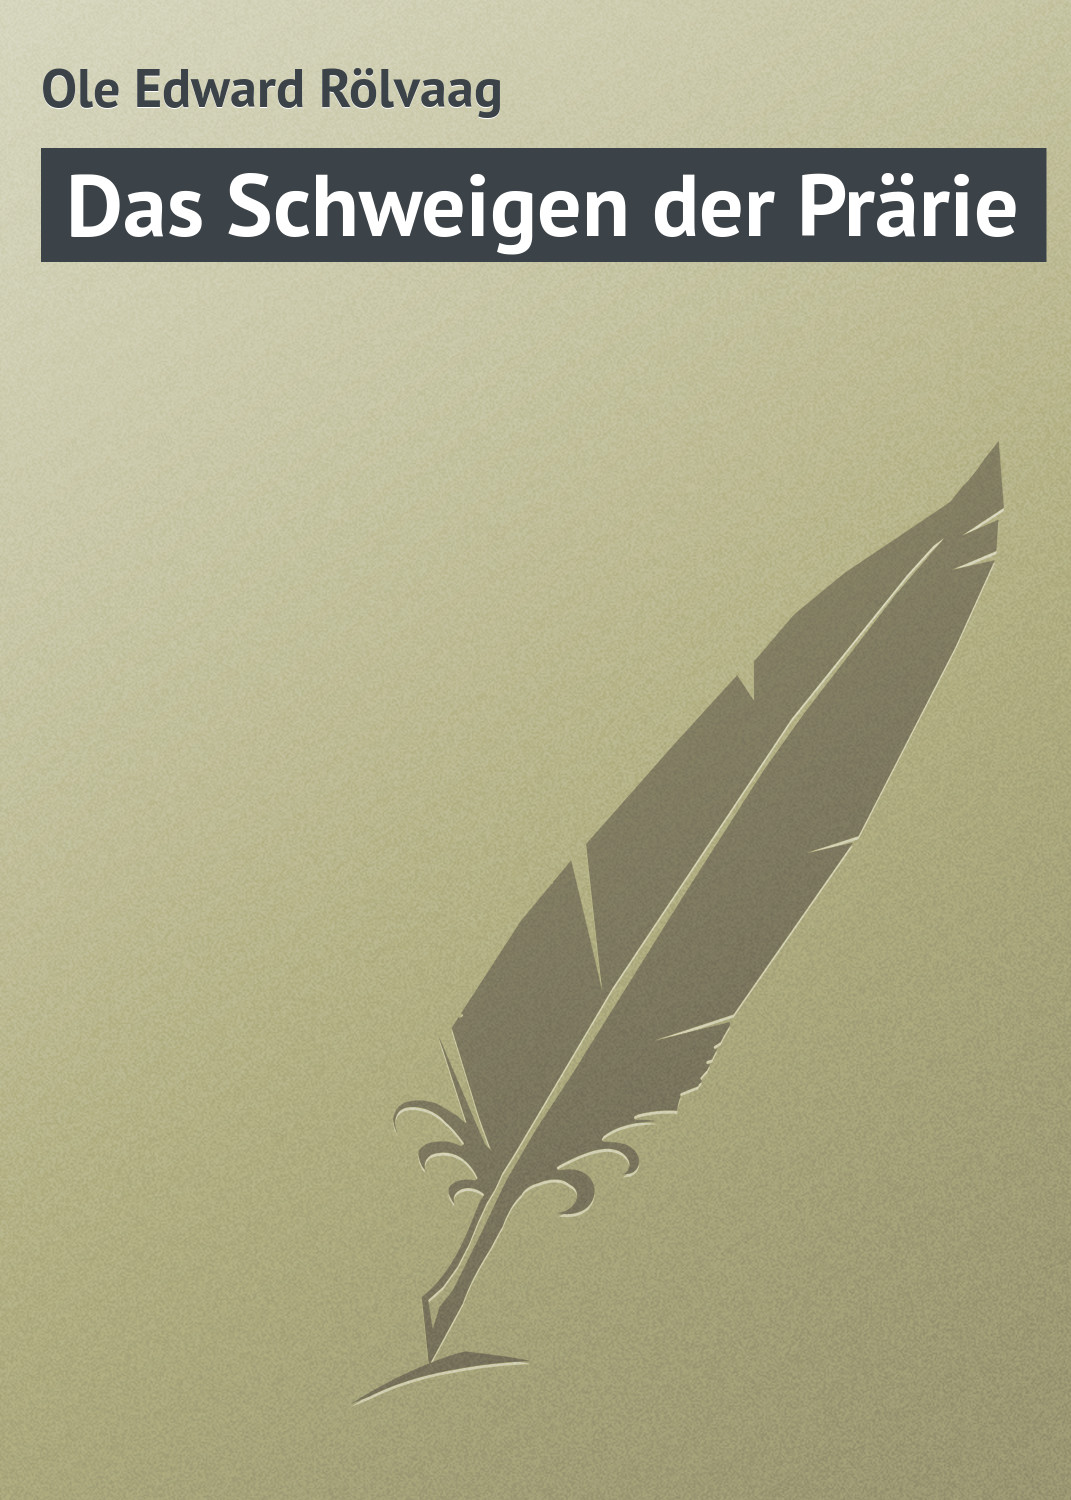 Книга Das Schweigen der Prärie из серии , созданная Ole Edward, может относится к жанру Зарубежная старинная литература, Зарубежная классика. Стоимость электронной книги Das Schweigen der Prärie с идентификатором 21107190 составляет 5.99 руб.